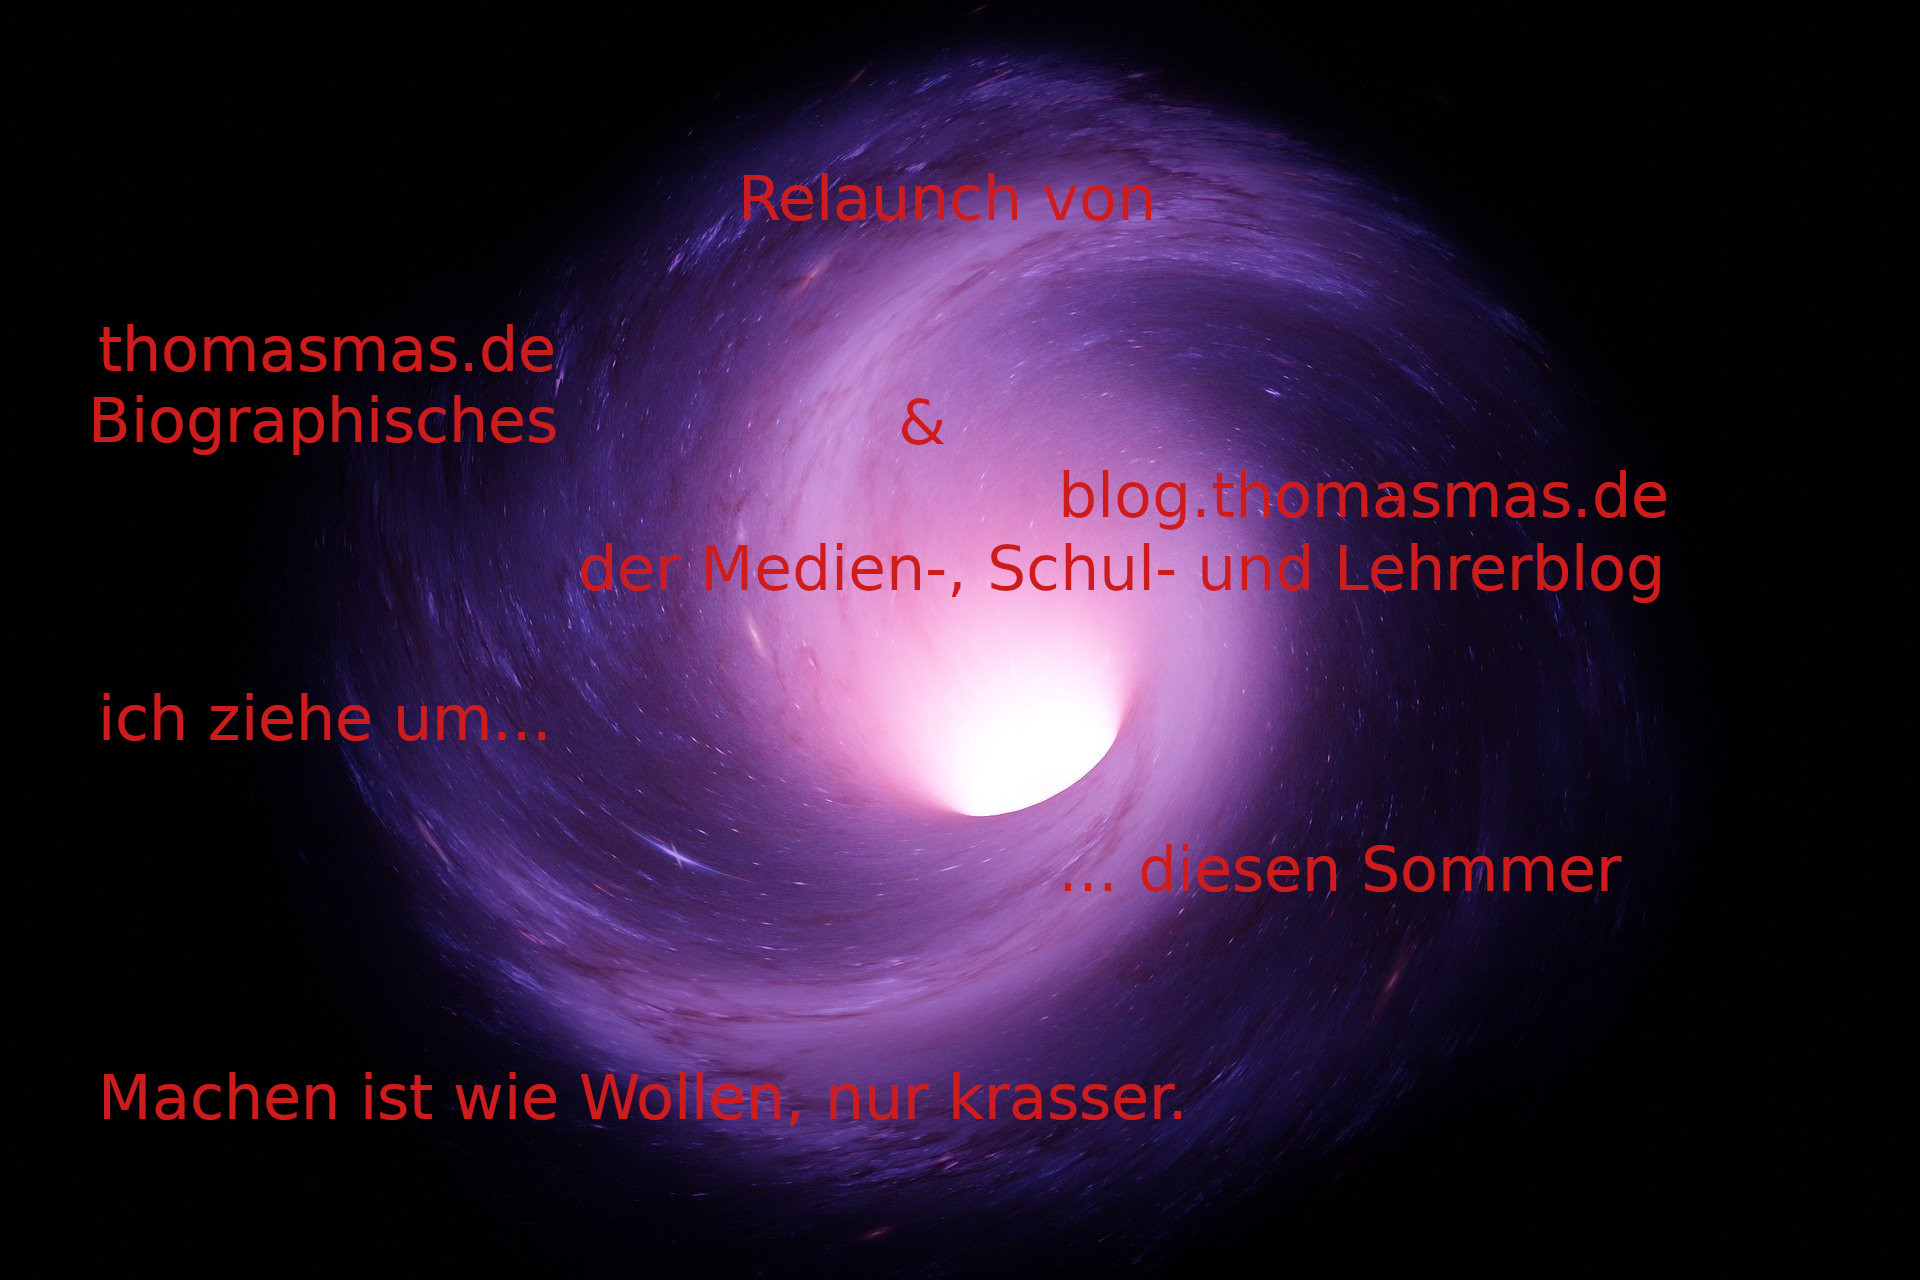 Ich ziehe um, diesen Sommer, thomasmas.de und blog.thomasmas.de -- Biographisches und der Medien-, Schul- und Lehrerblog